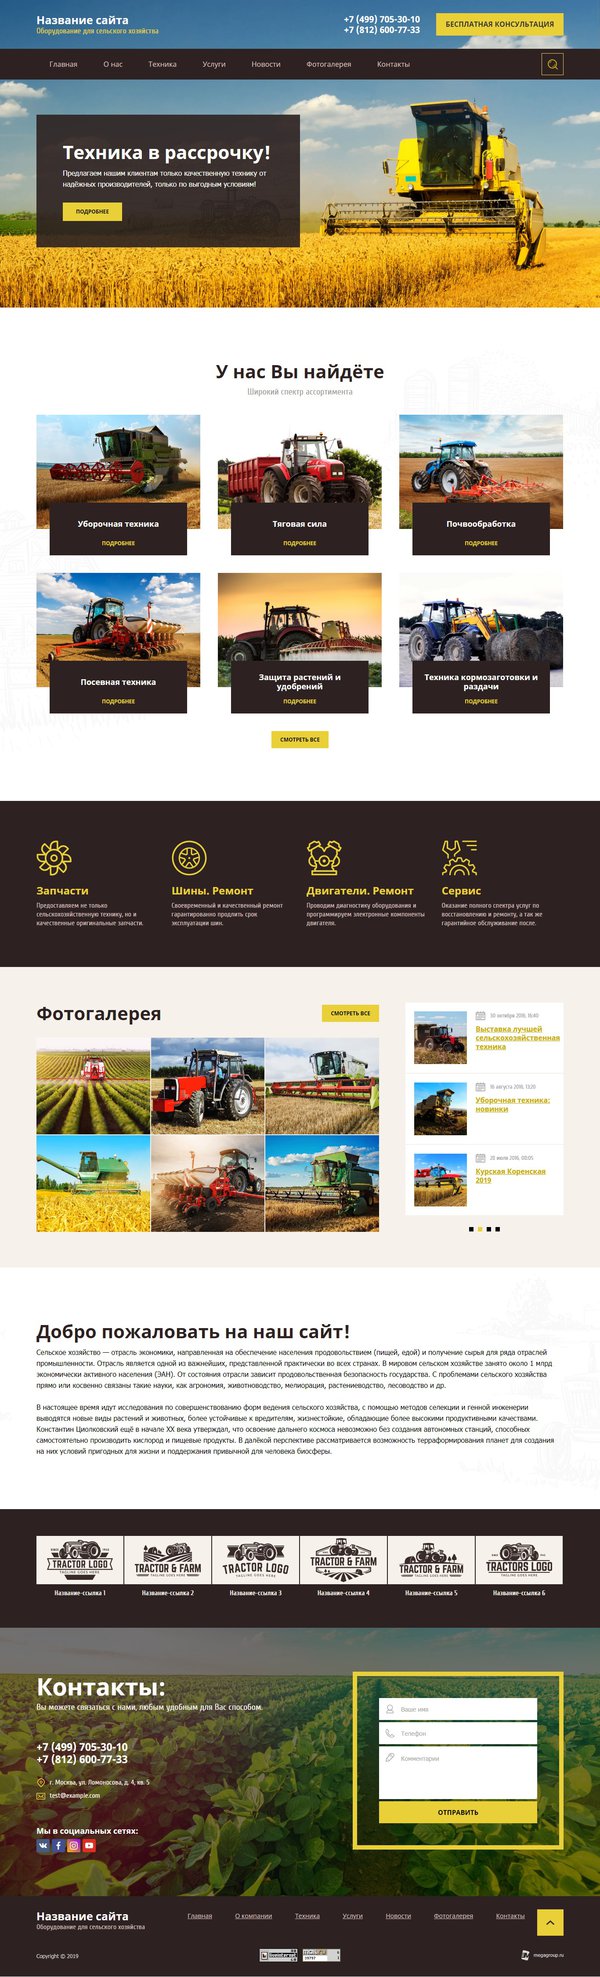 Готовый Сайт-Бизнес № 2370773 - Оборудование для сельского хозяйства (Десктопная версия)